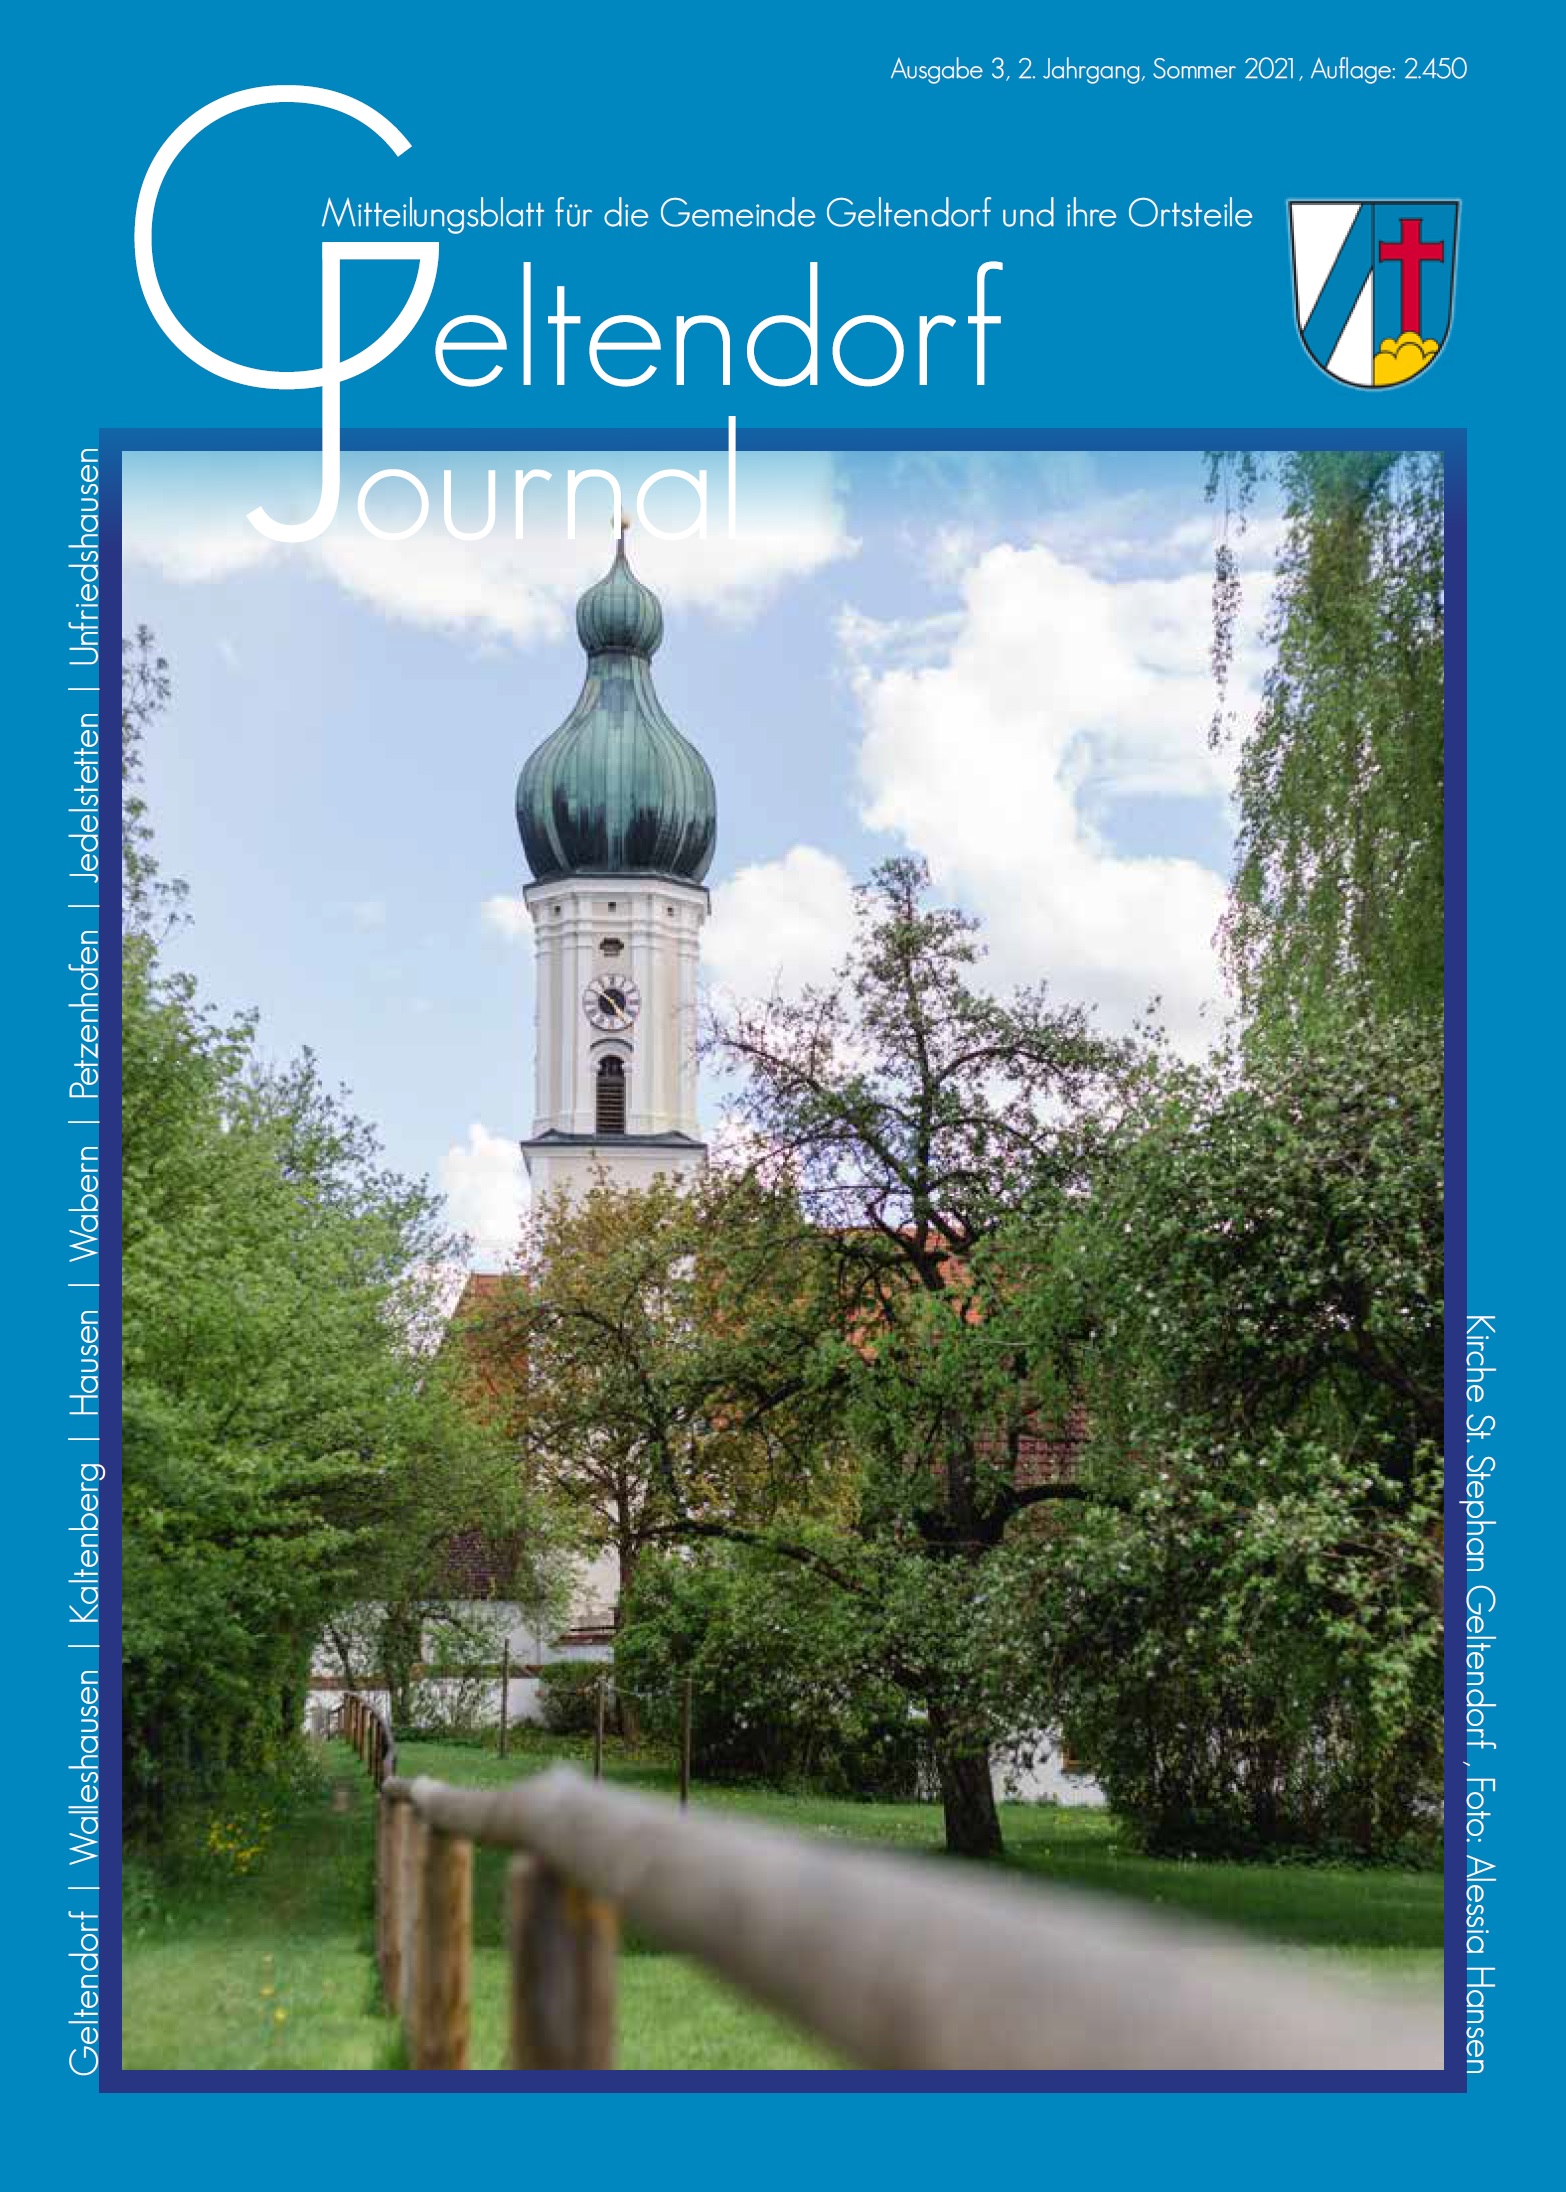 Geltendorf Journal Nr. 3 - 2021 (Sommer 2021)